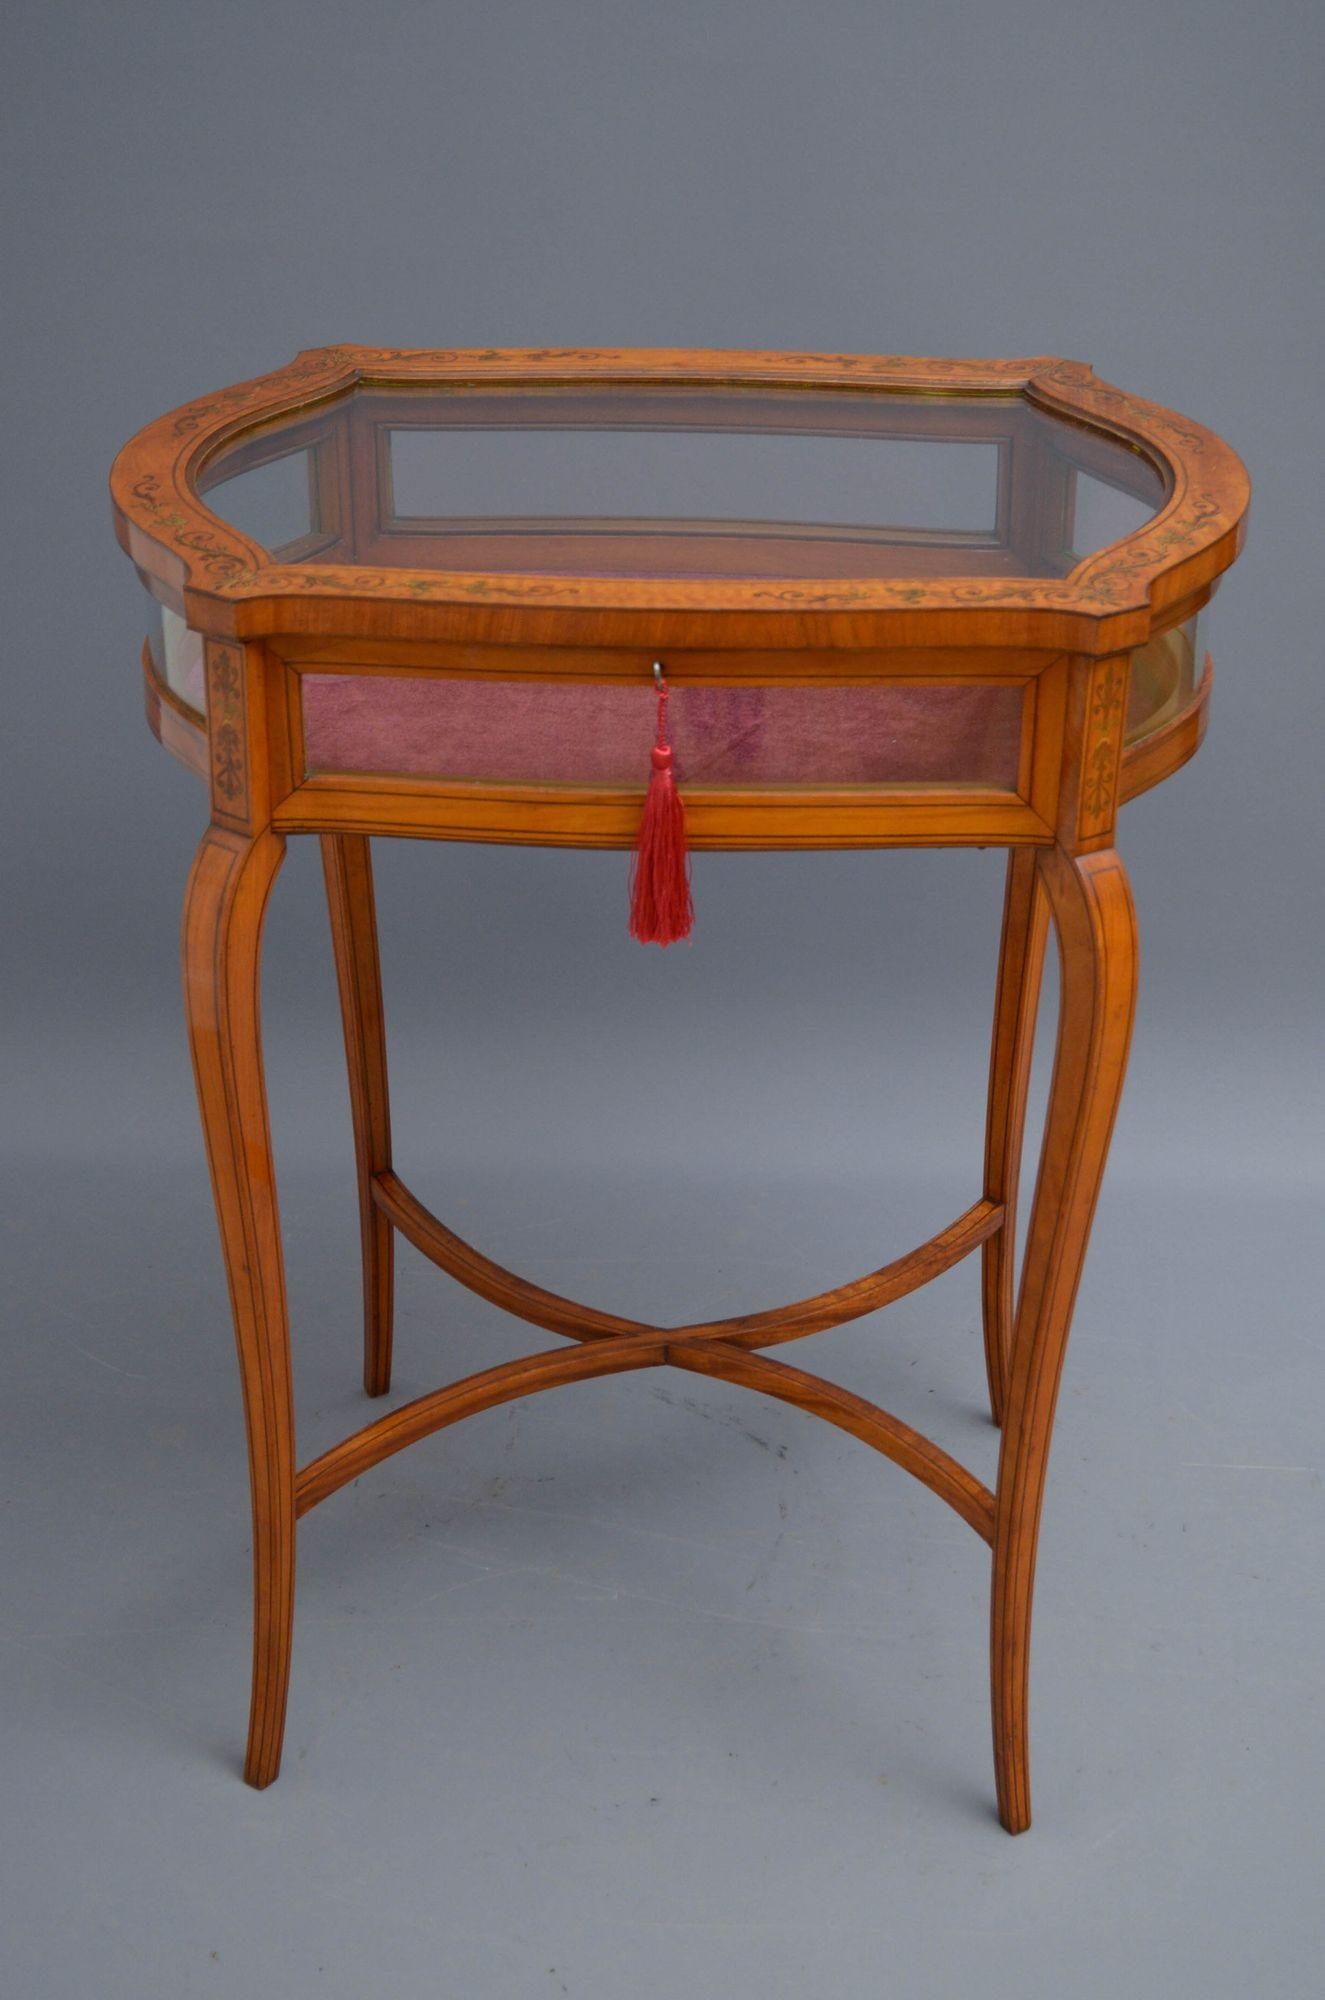 Sn5462 Hervorragender edwardianischer Tisch aus satiniertem Holz mit serpentinenförmigem Umriss, glasierter, fein eingelegter Klappe, ausgestattet mit einem funktionierenden Originalschloss, Schlüssel und Originalscharnieren, die das neu